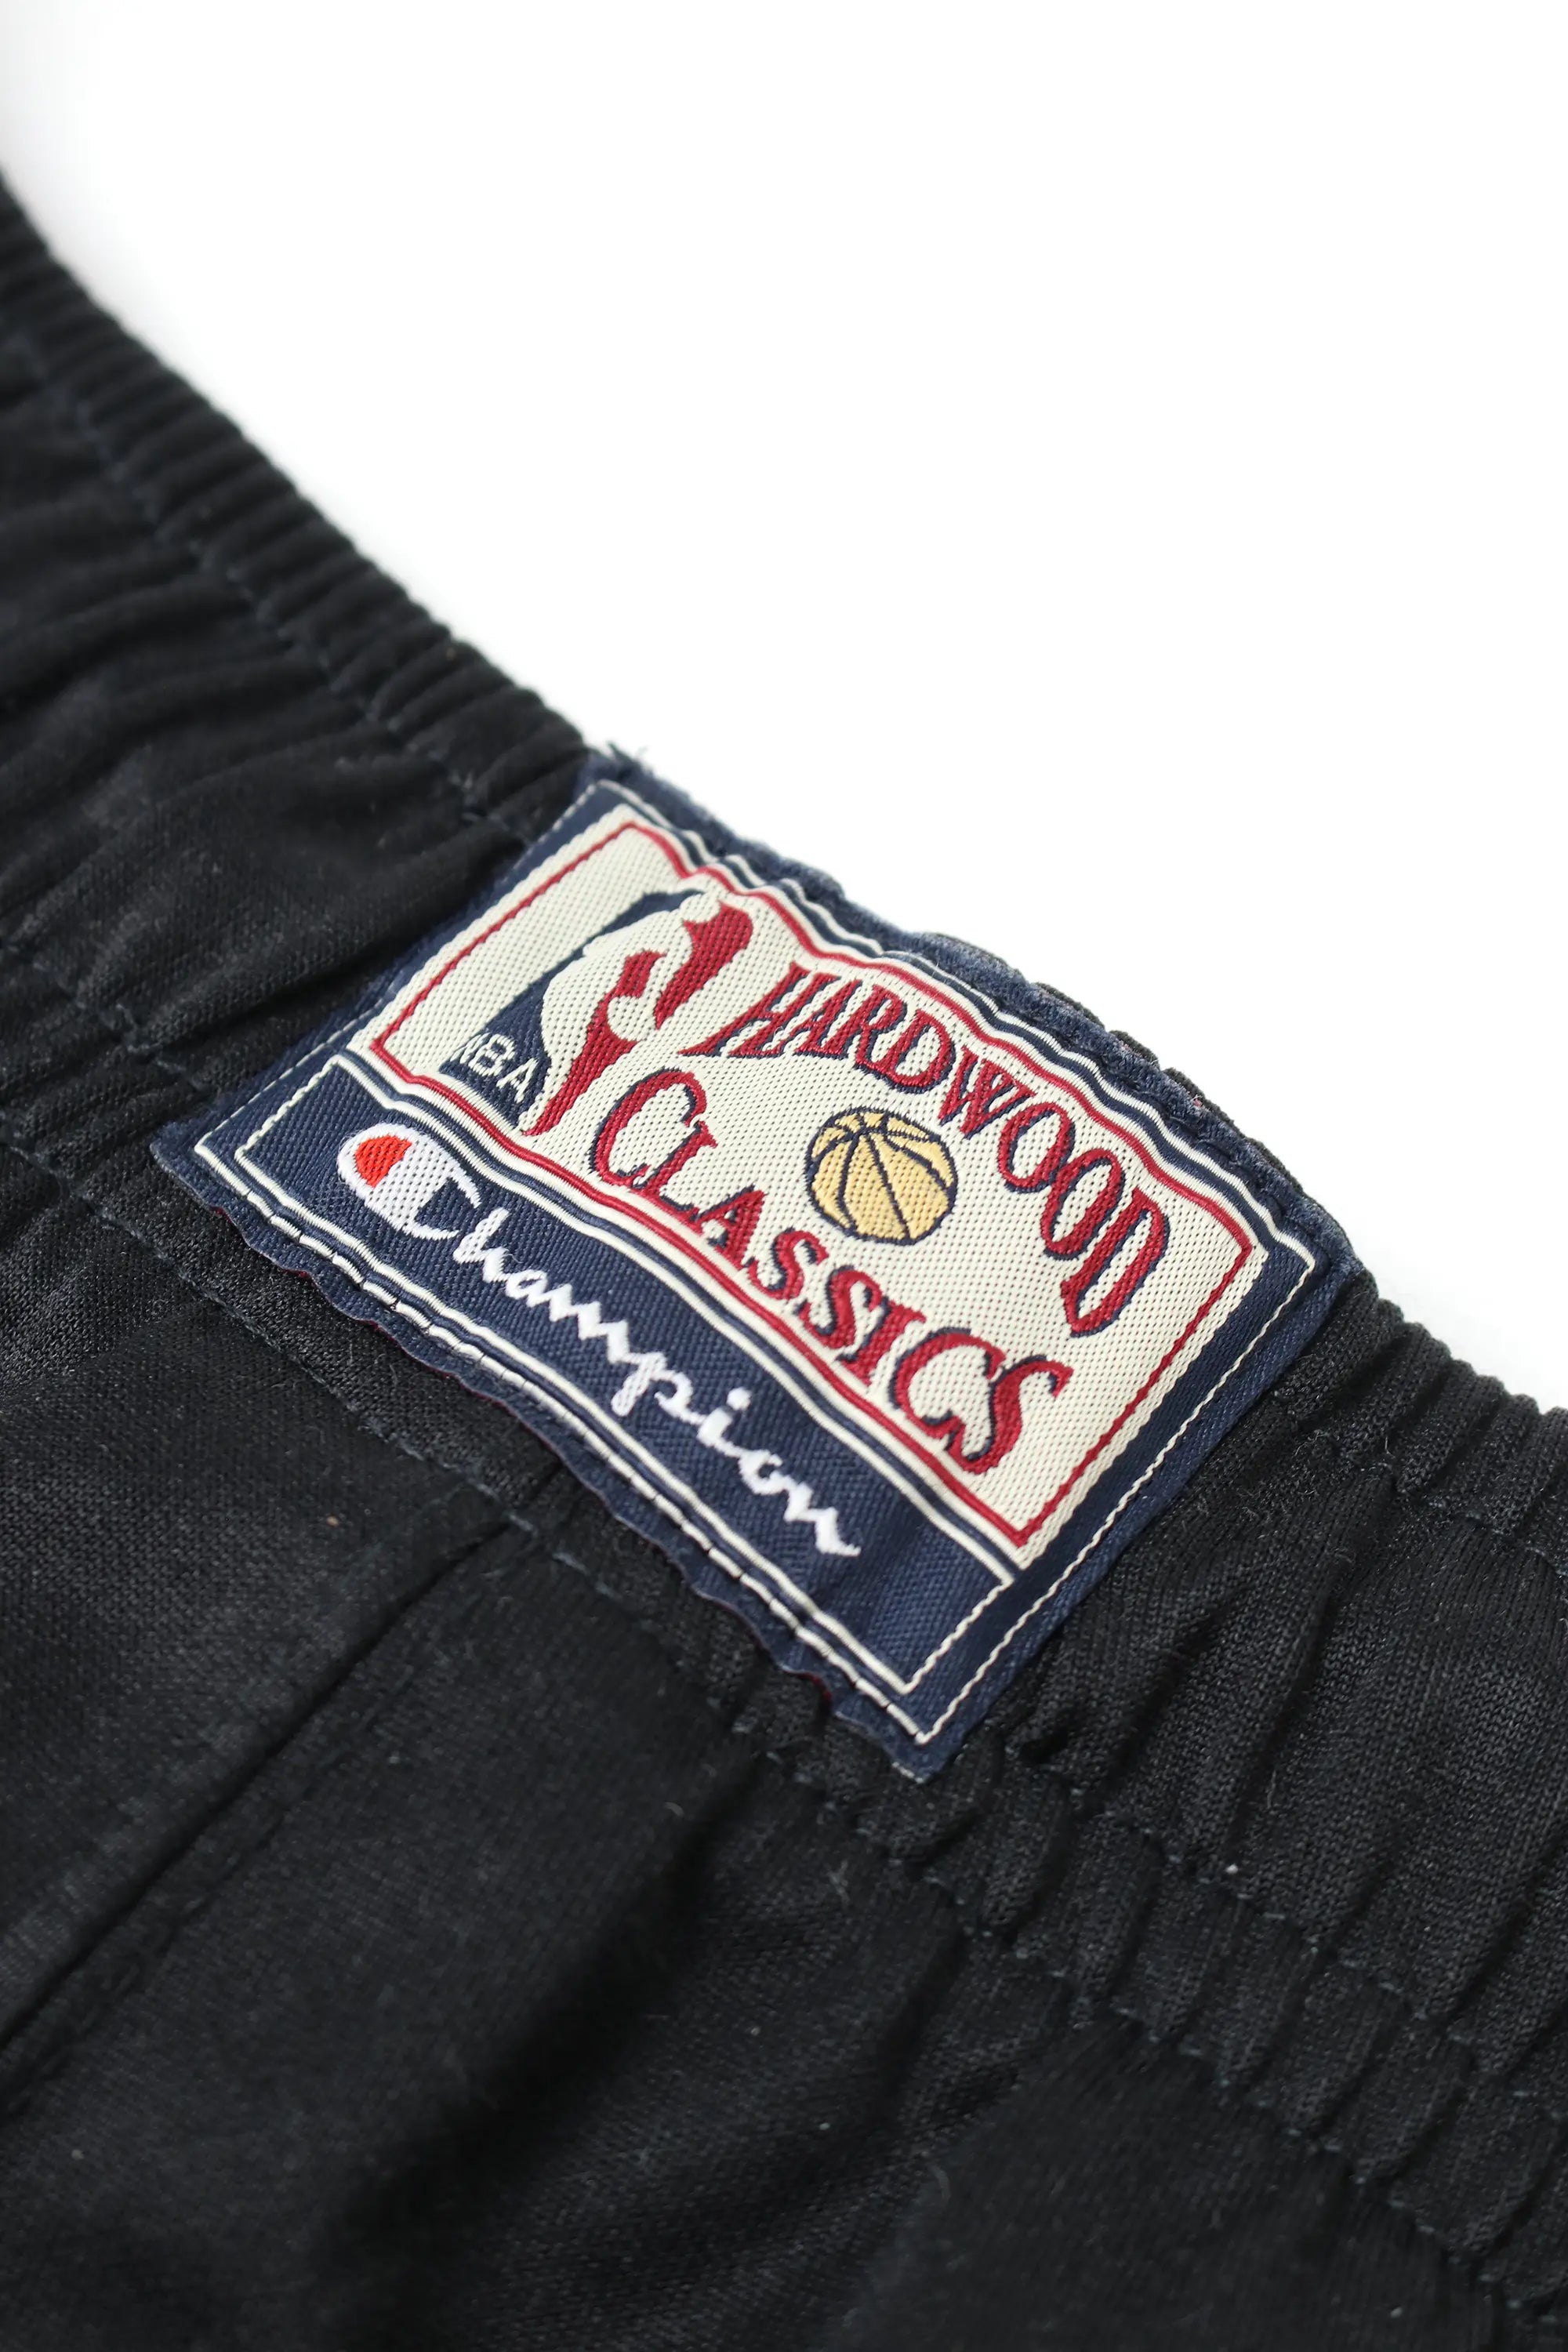 Hardwood Classics Celtics Pants